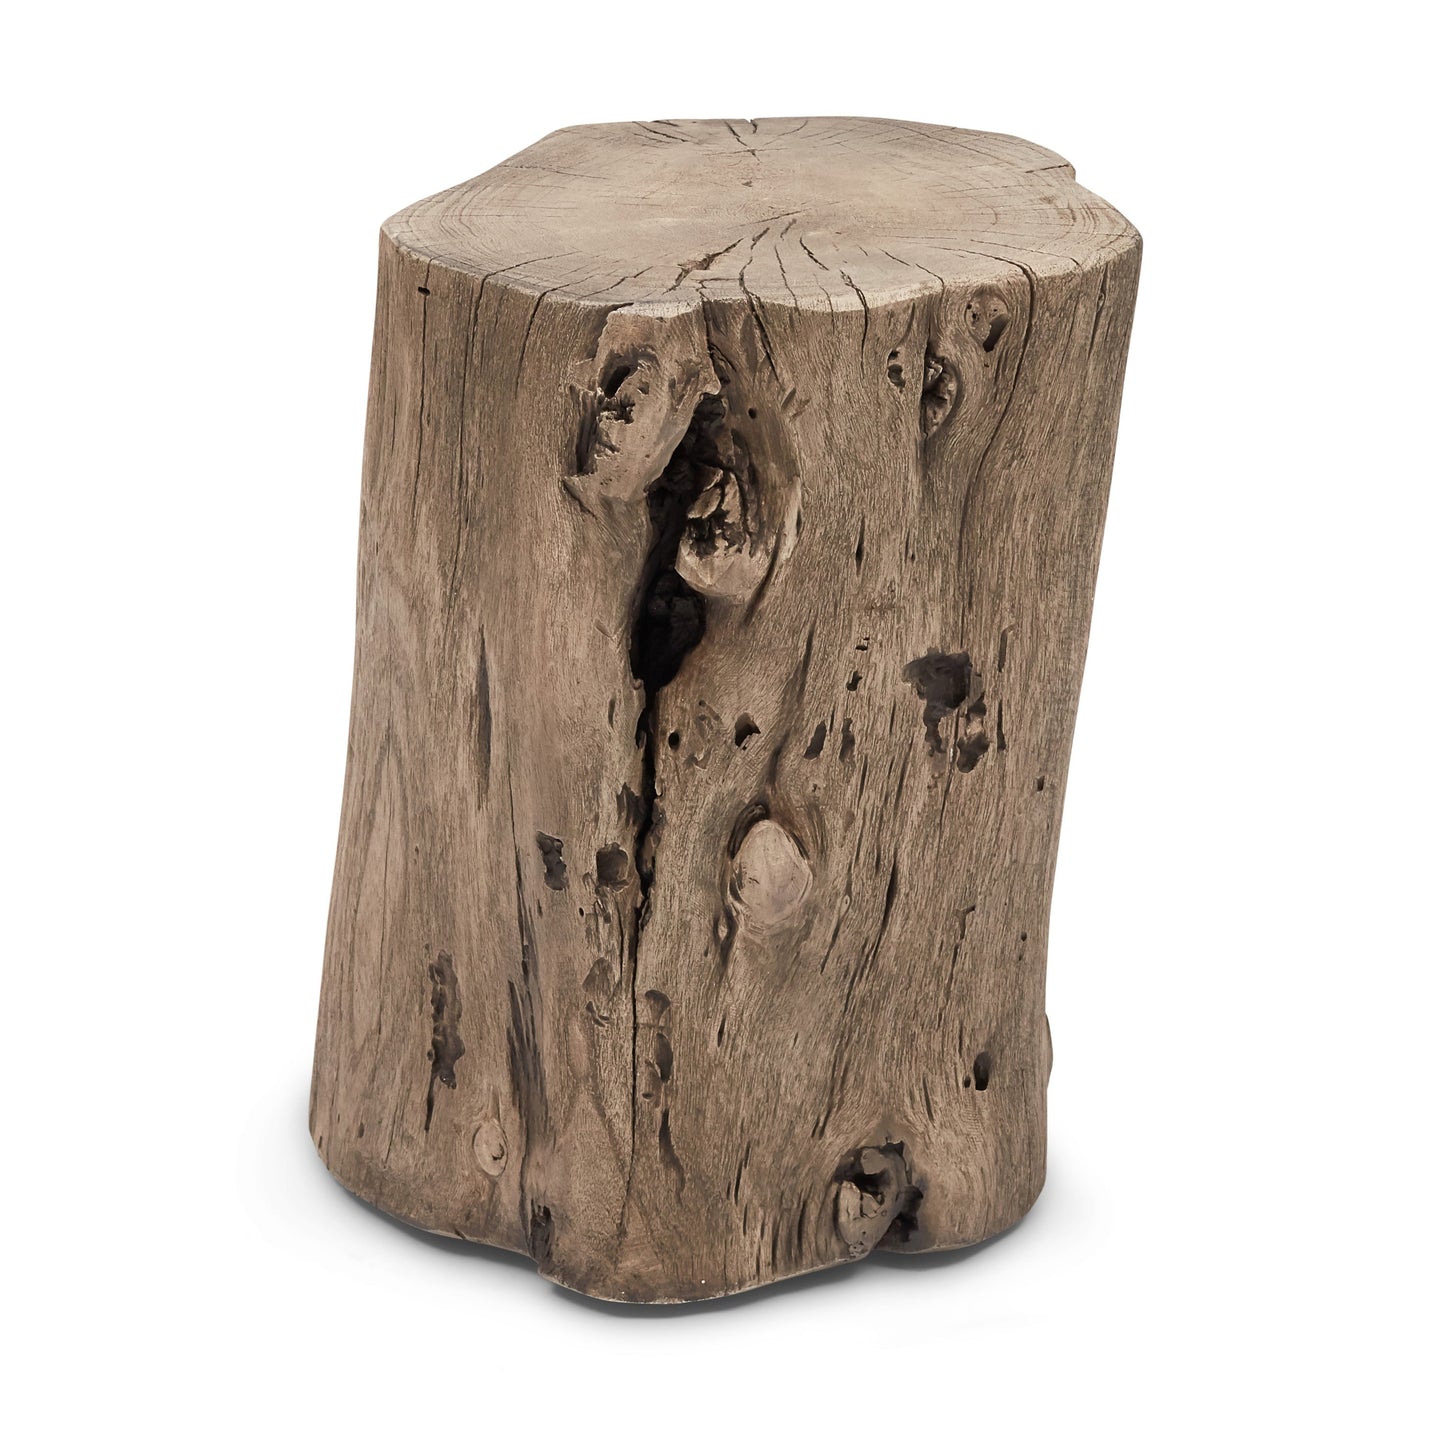 Solid Wood Stump Stool